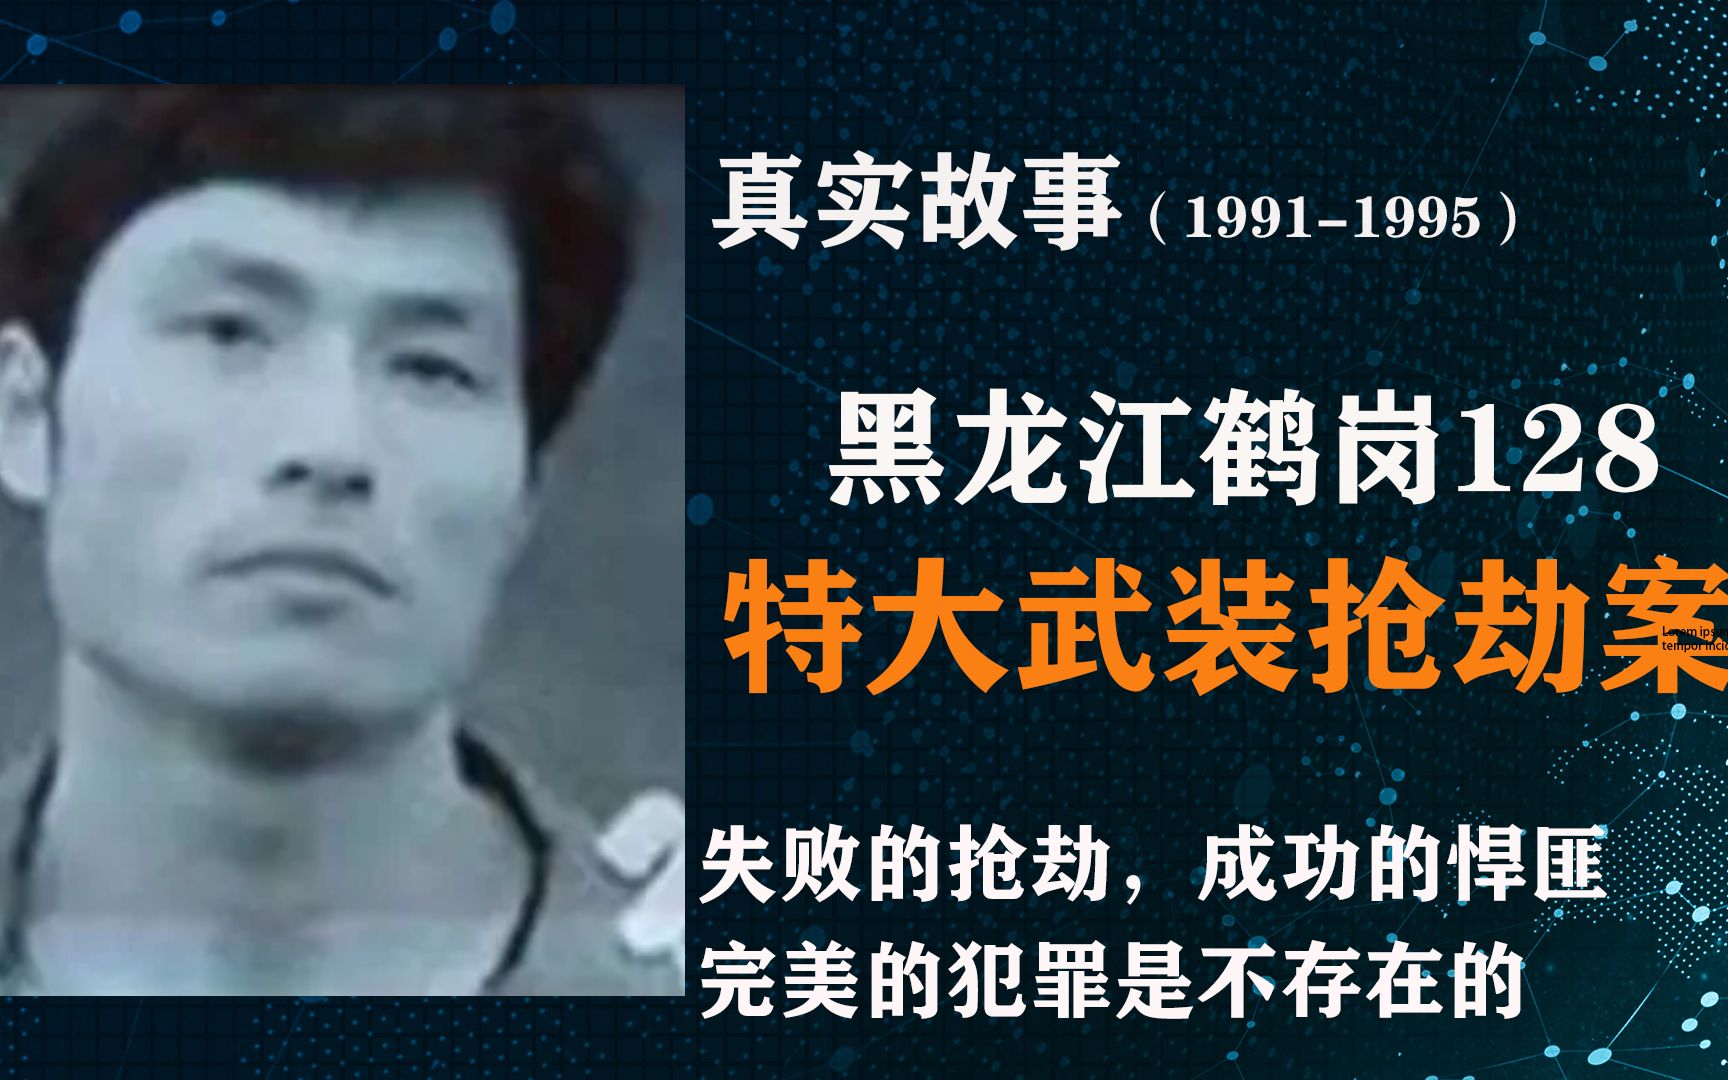 我国排名第一的武装抢劫案,黑龙江鹤岗128特大武装抢劫案